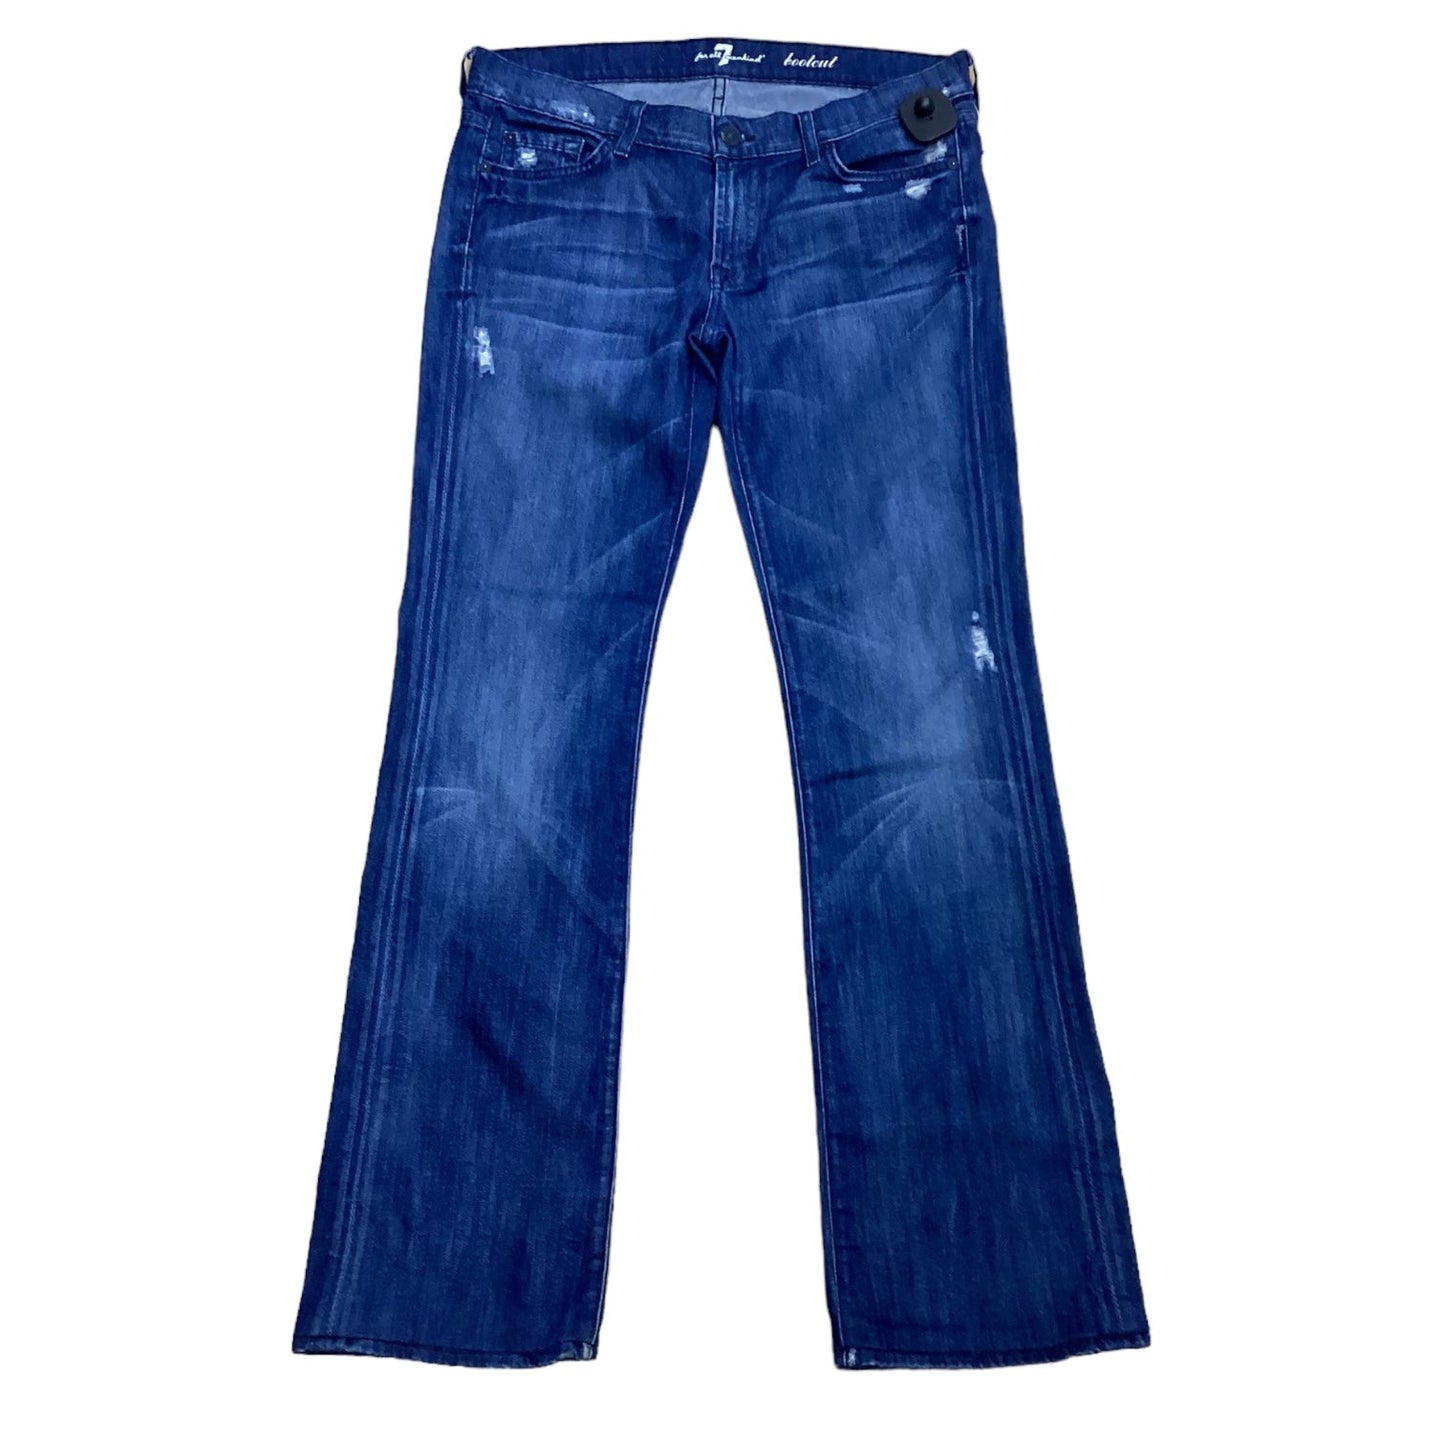 Blue Jeans Designer 7 For All Mankind, Size 10